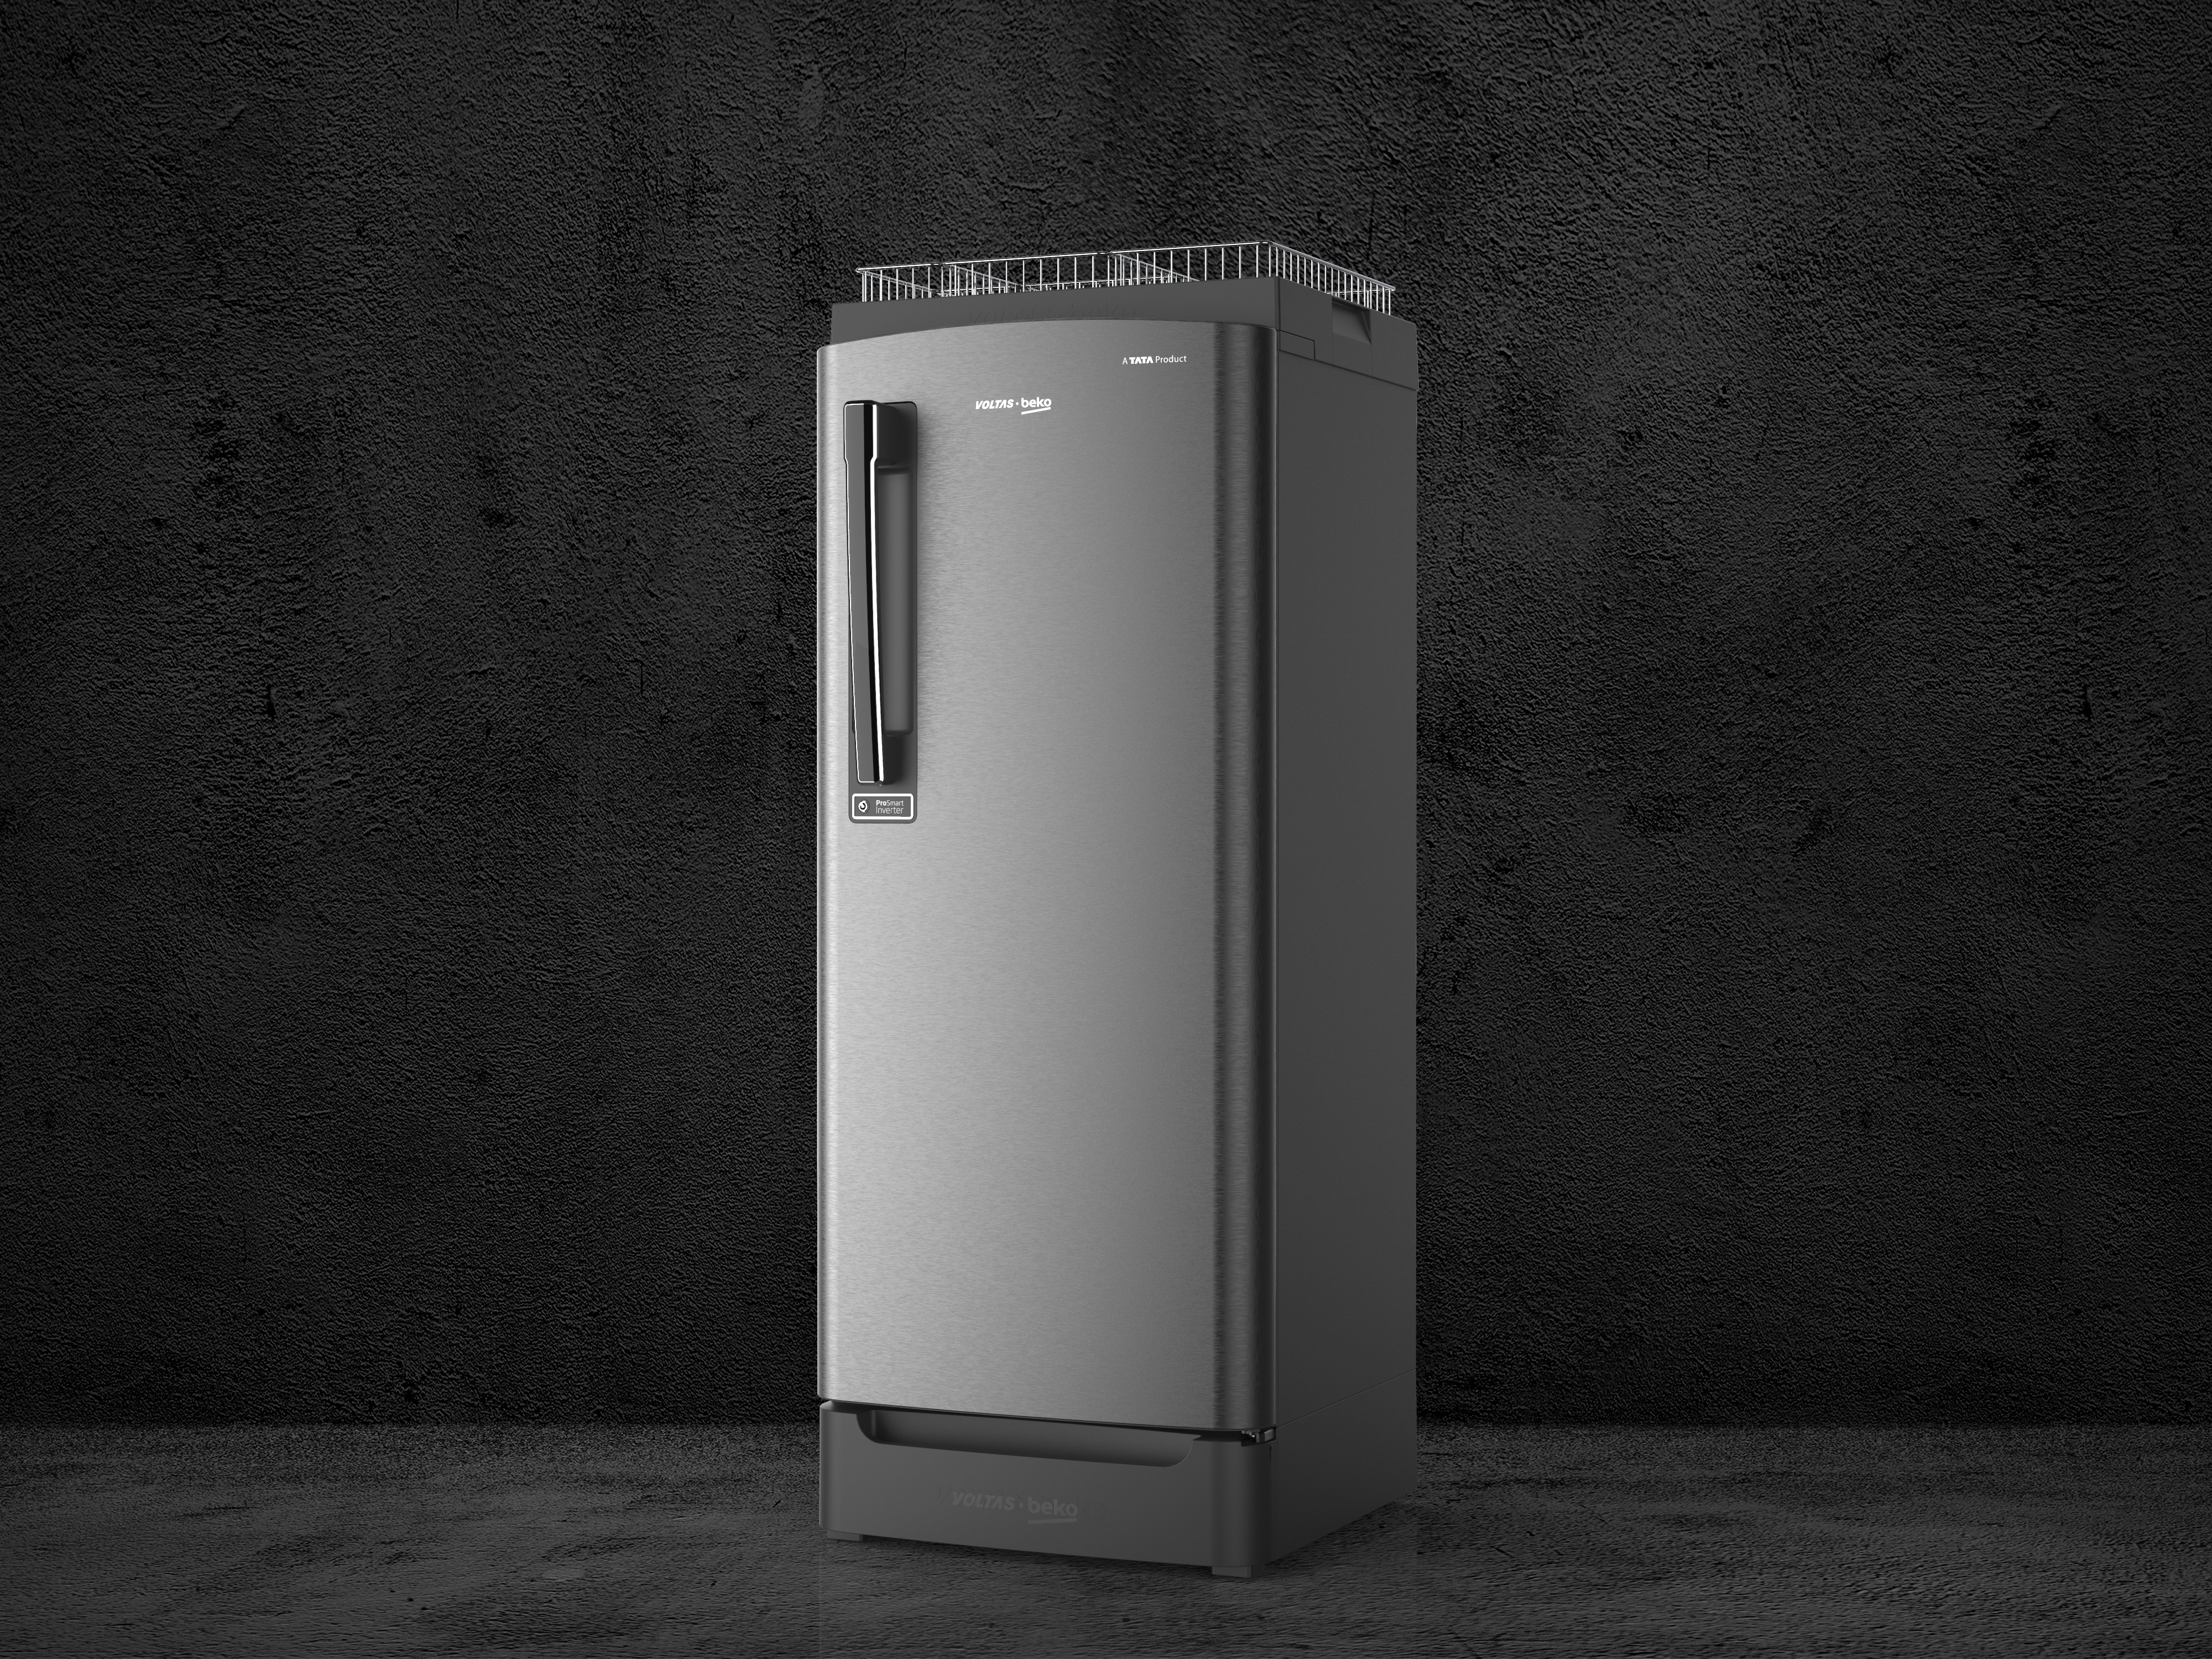 Voltas Beko Direct Cool Single Door Refrigerator